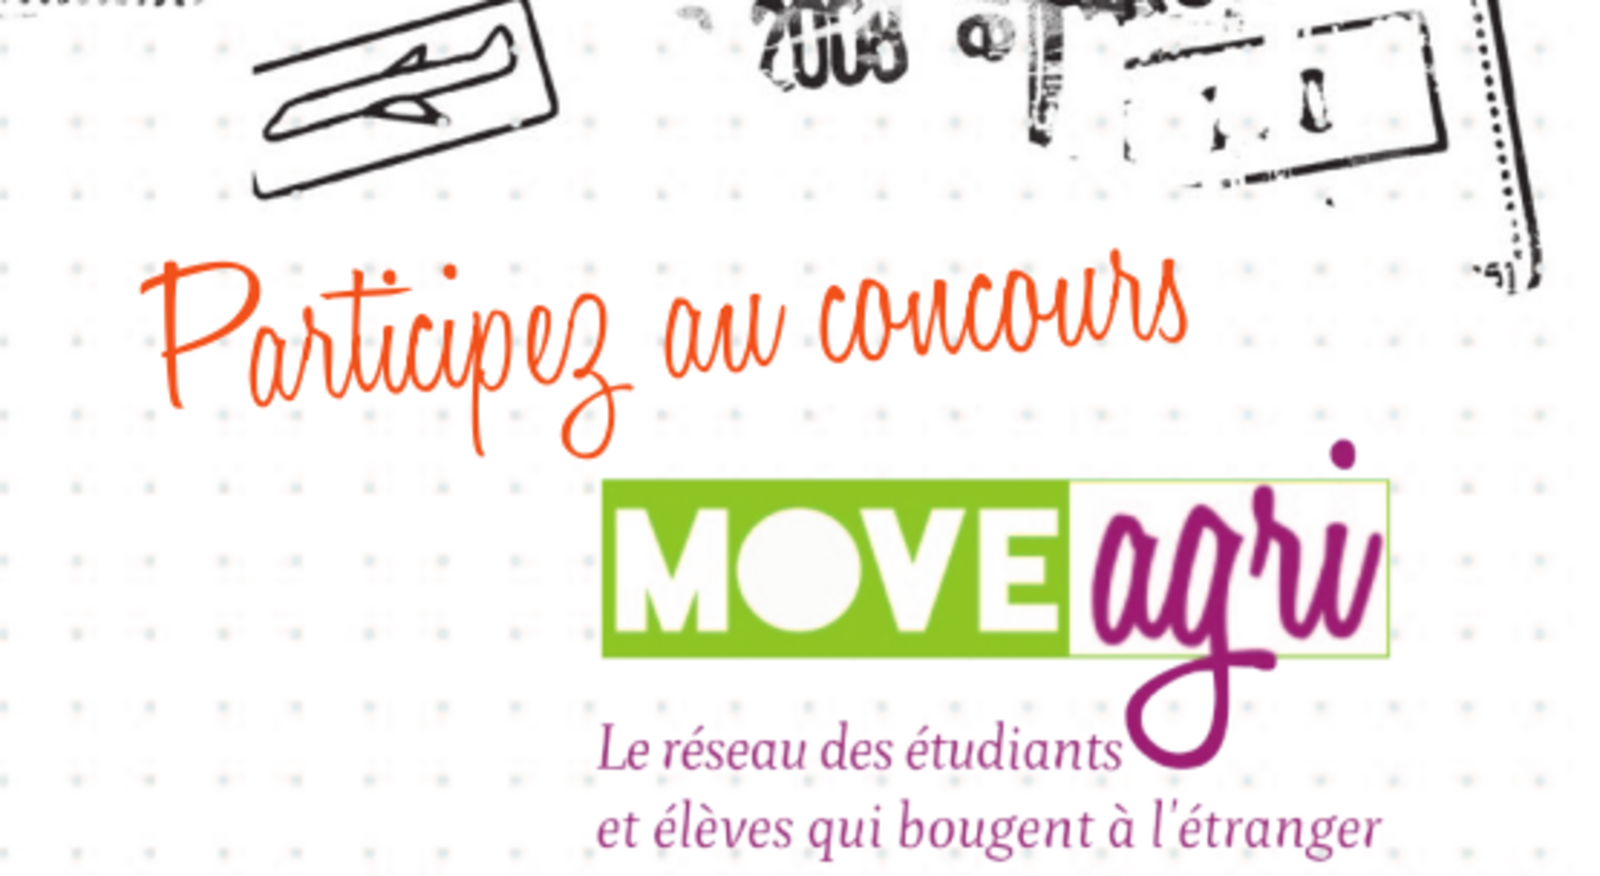 image bandeauConcours.png (0.1MB)
Lien vers: https://moveagri.educagri.fr/?BlogsLaureats